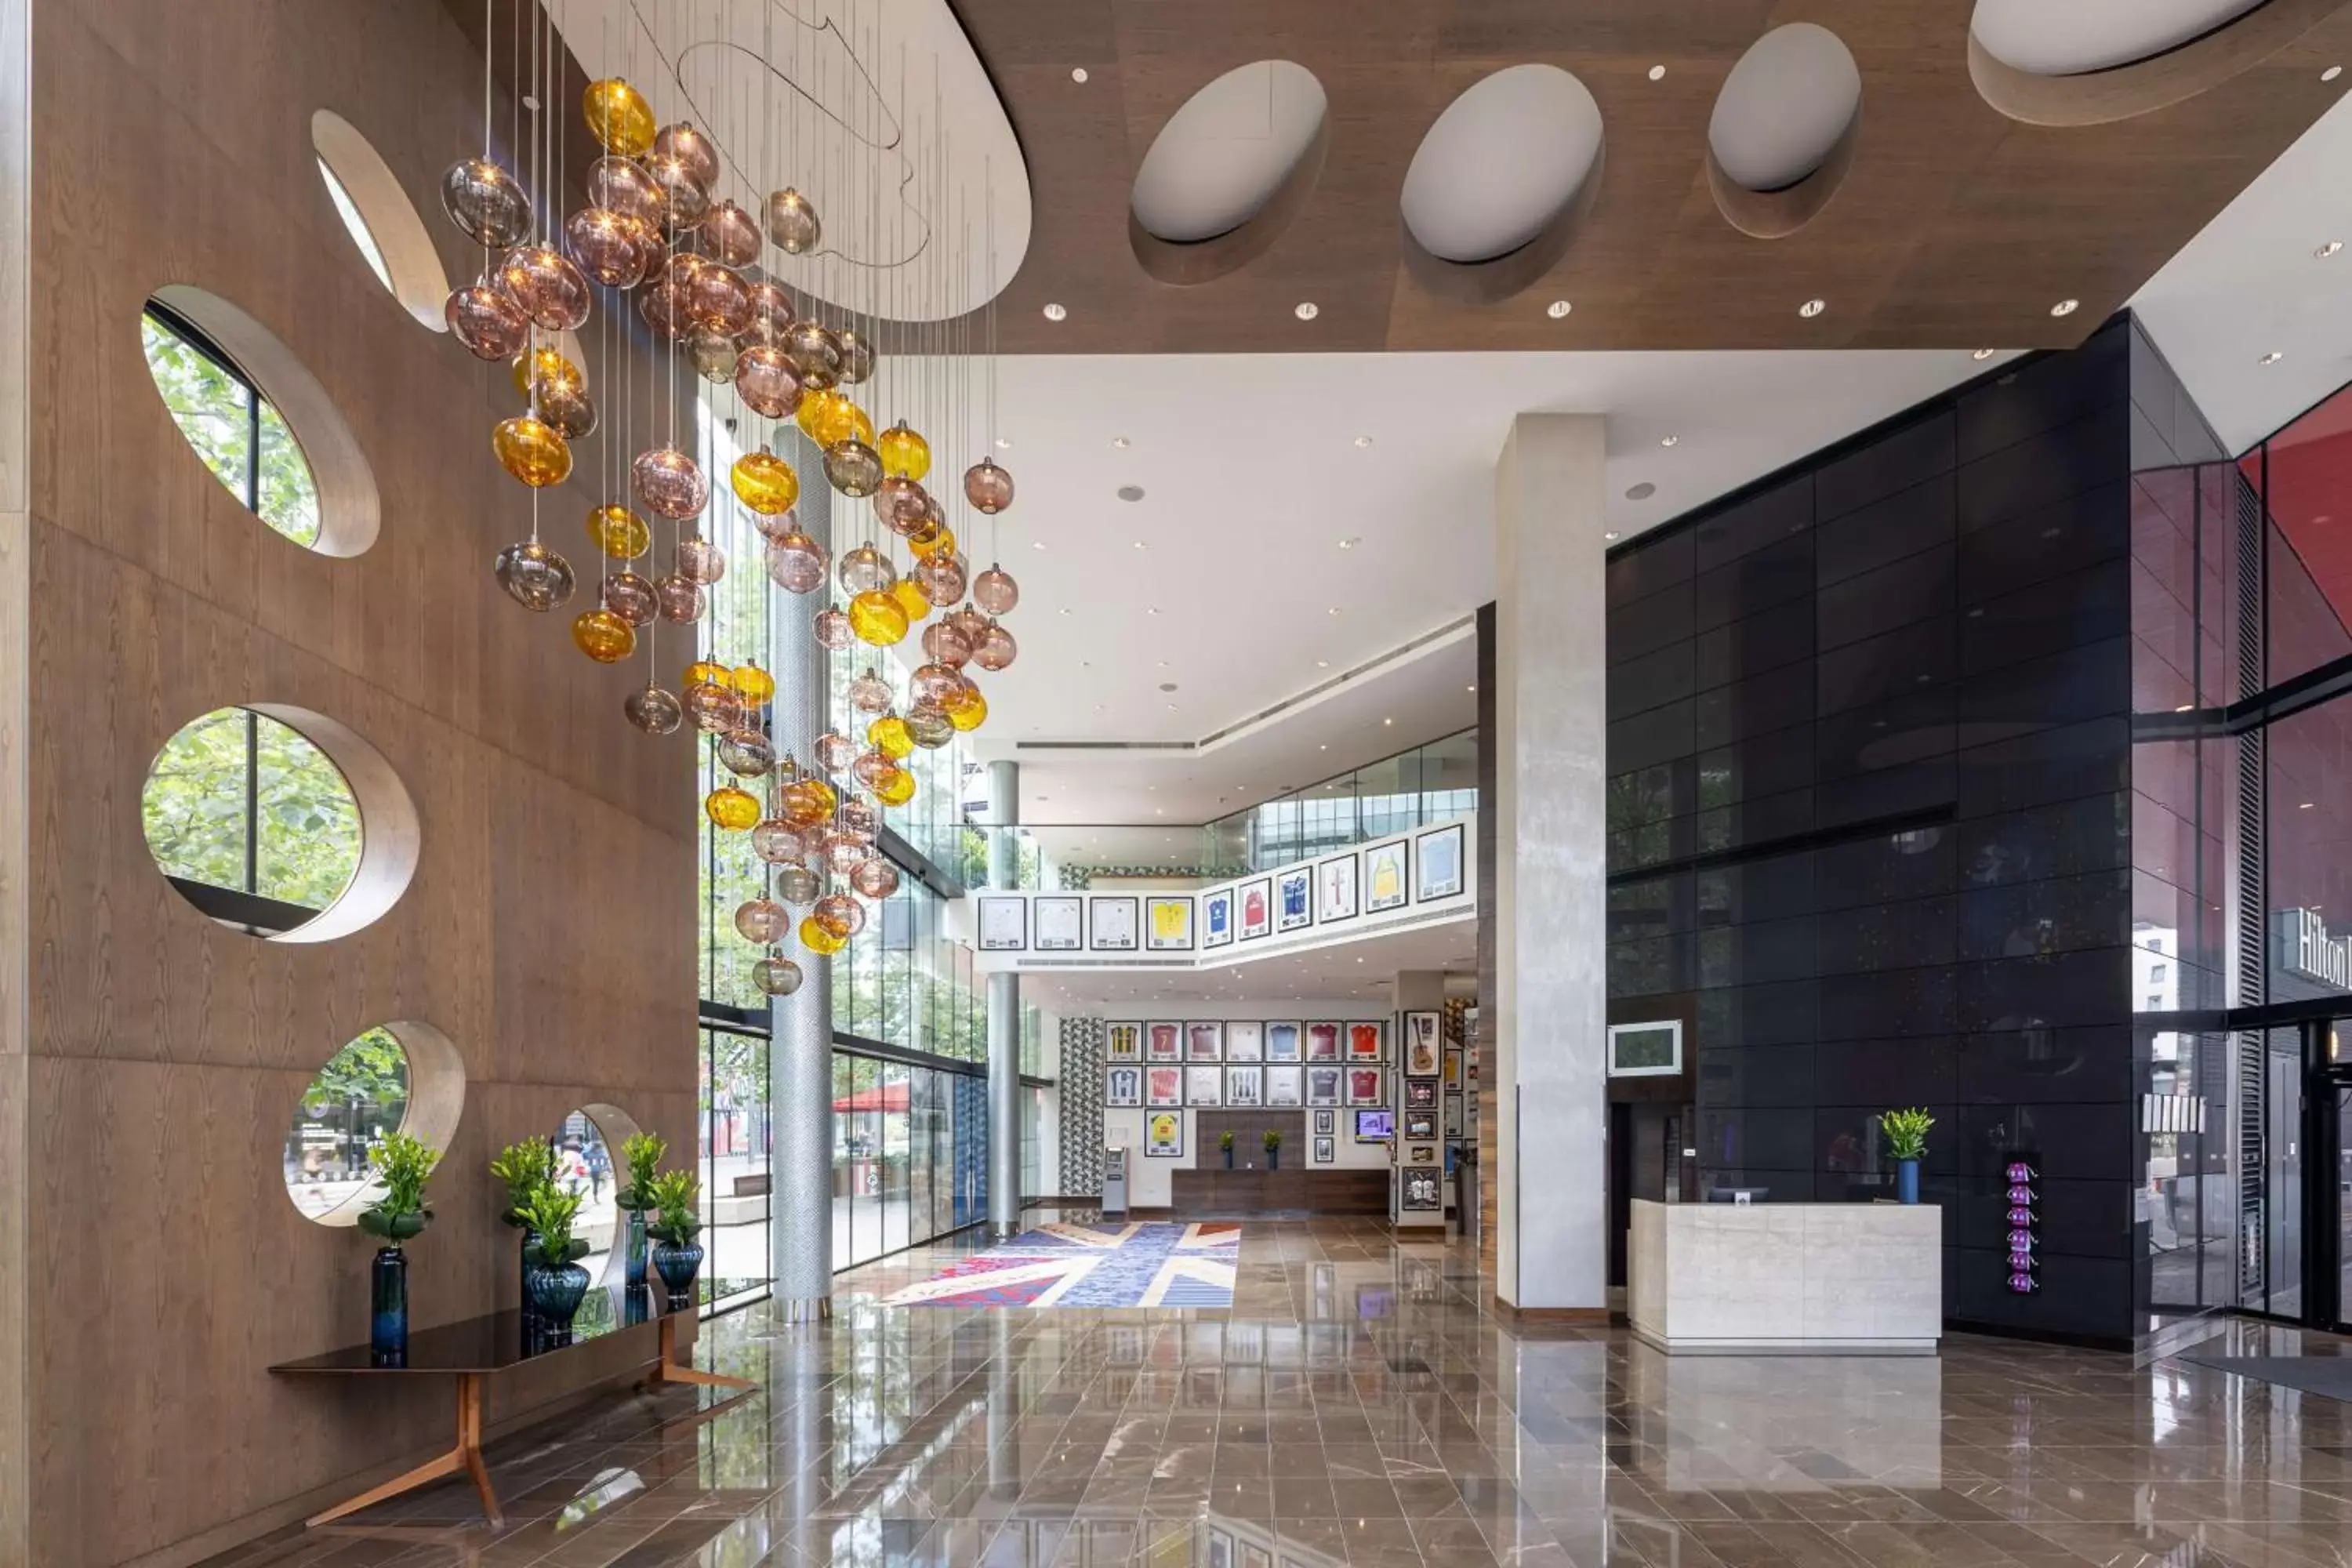 Lobby or reception, Lobby/Reception in Hilton London Wembley